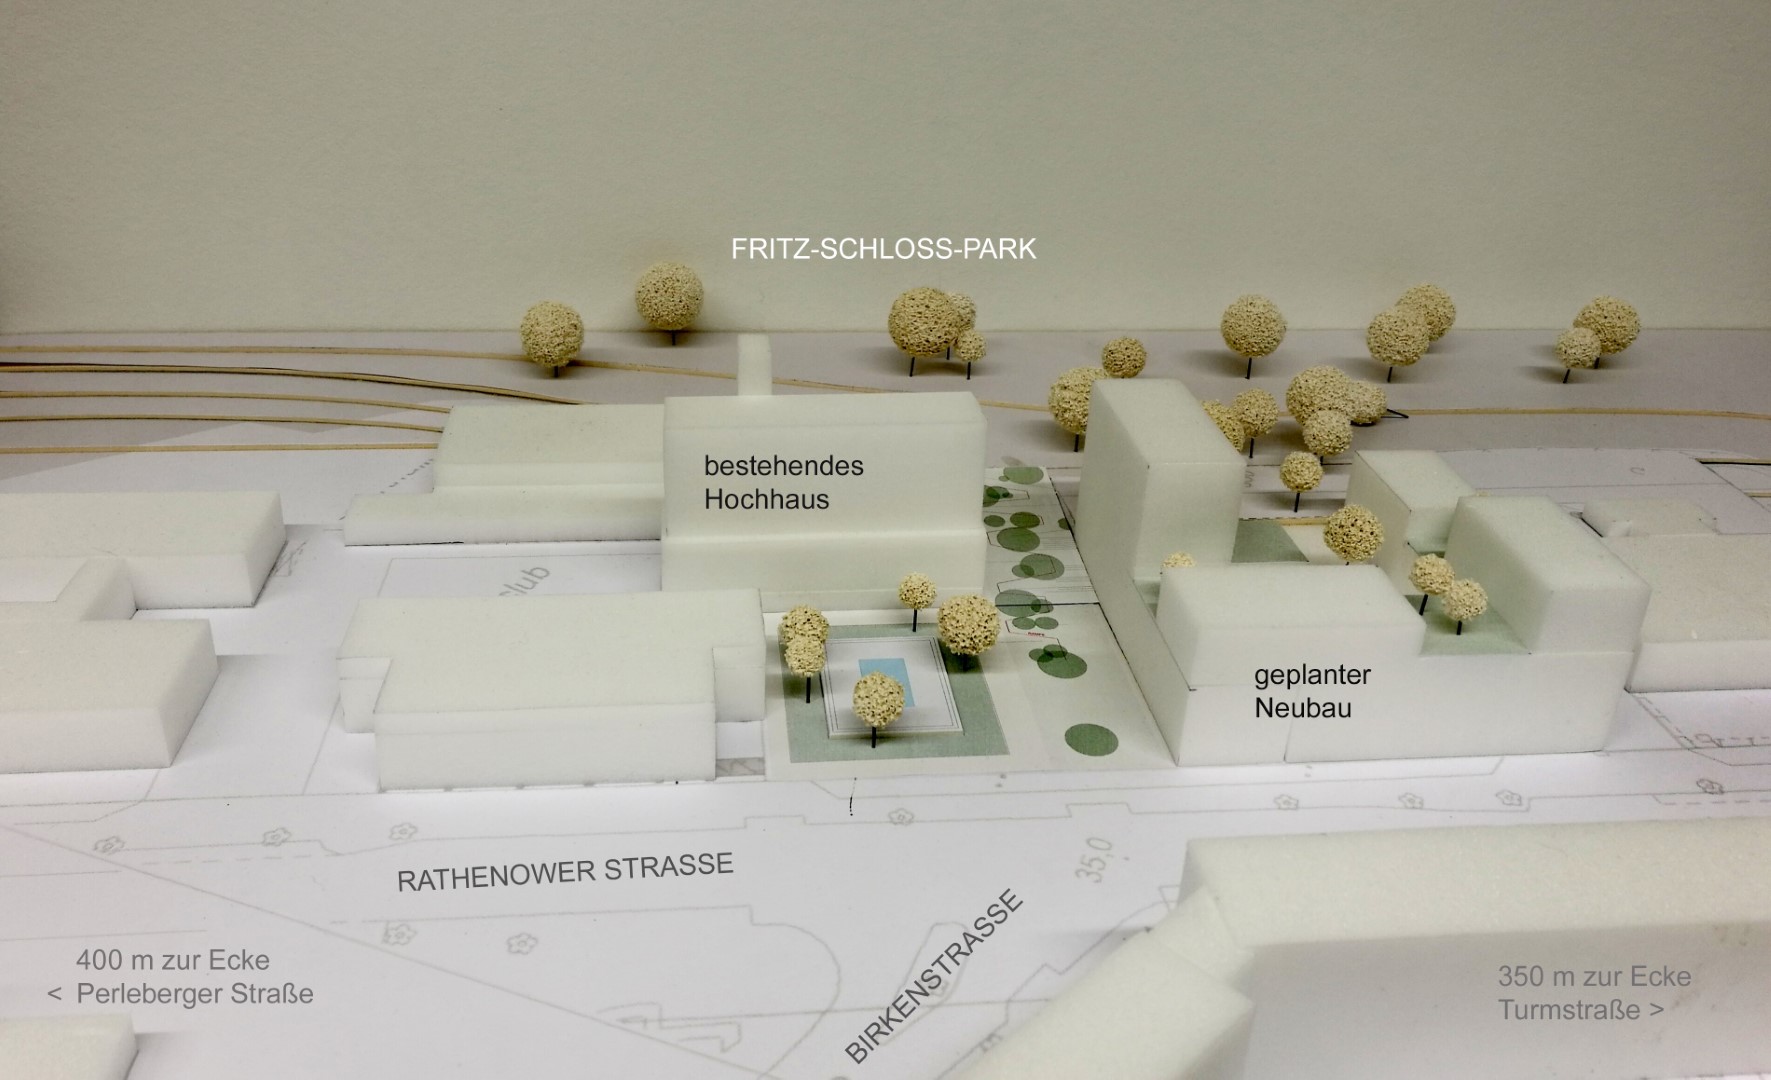 Modell des städtebaulichen Konzepts Rathenower Straße